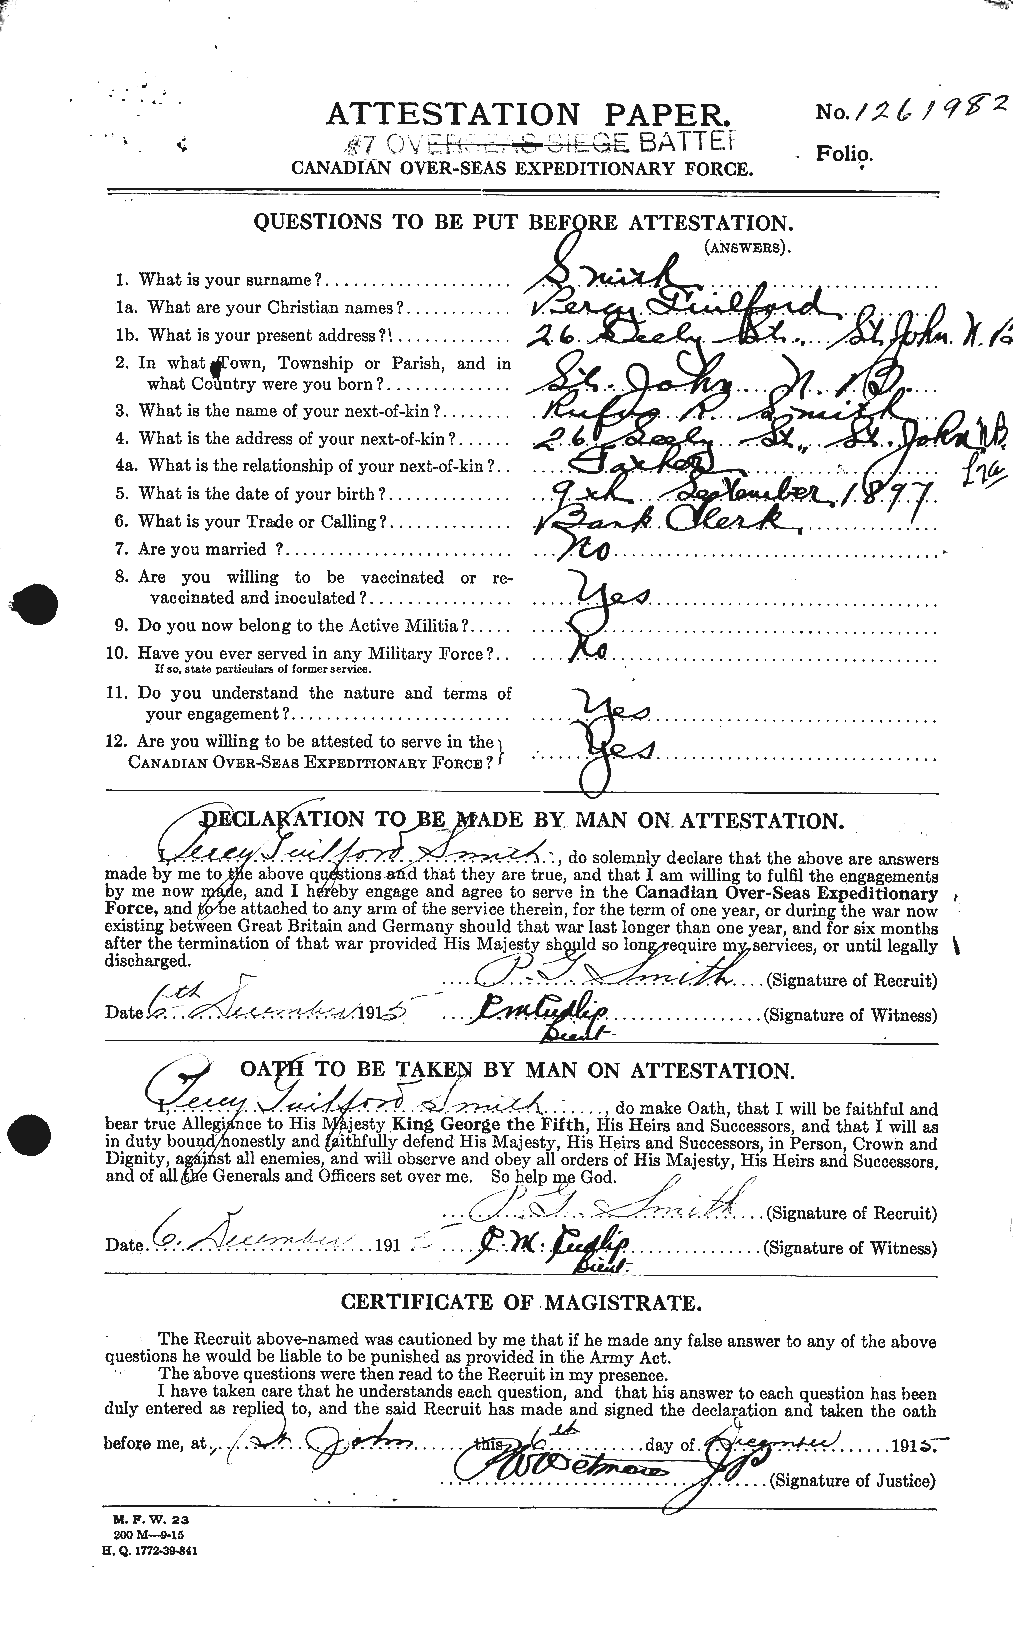 Dossiers du Personnel de la Première Guerre mondiale - CEC 622183a